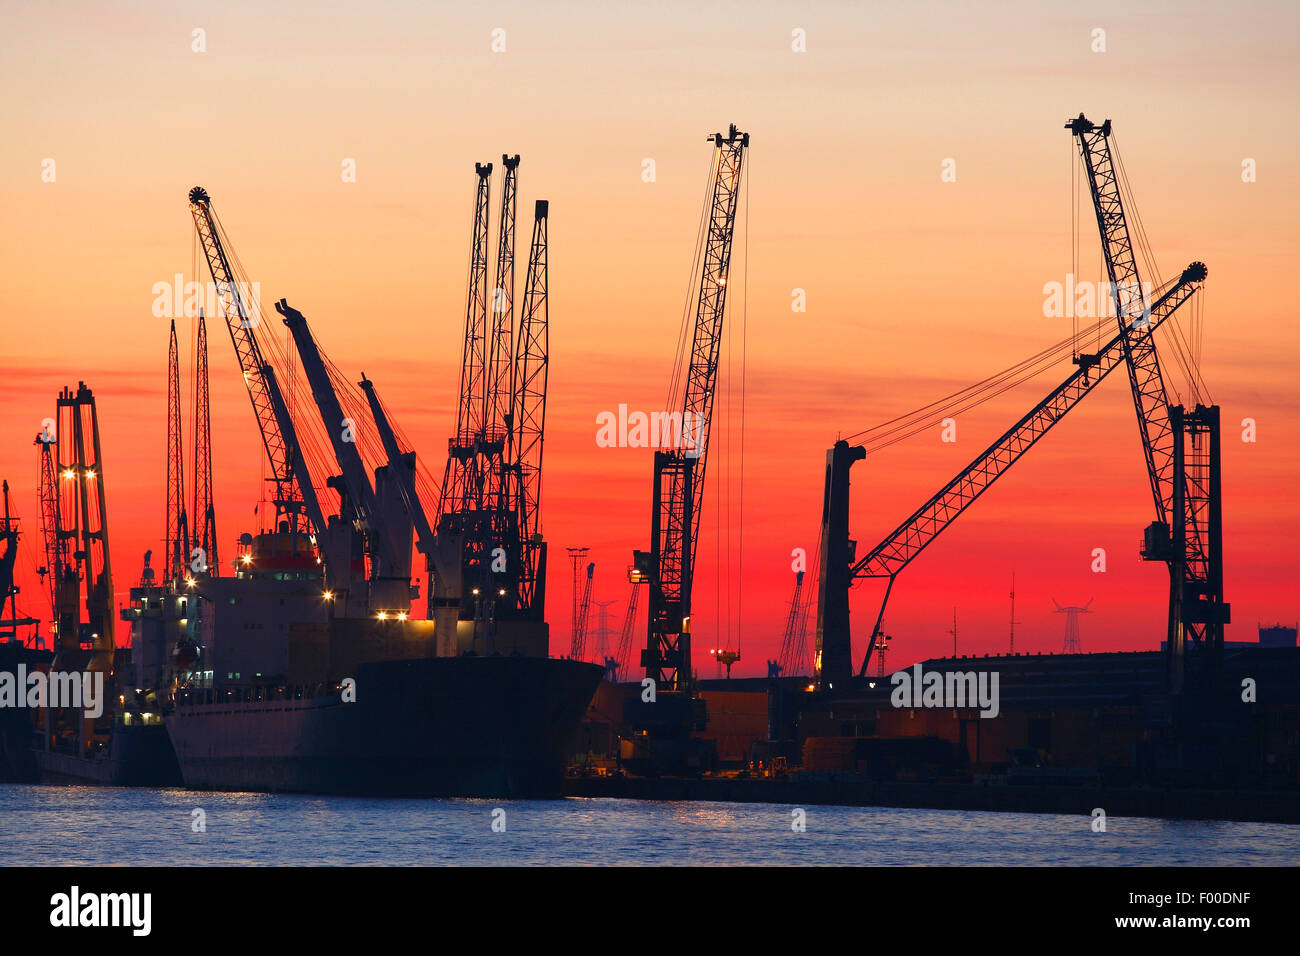 Schiffe im Dock Öl-Raffinerie aus der petrochemischen Industrie der Antwerpener Hafen bei Sonnenuntergang, Belgien, Antwerpen Stockfoto